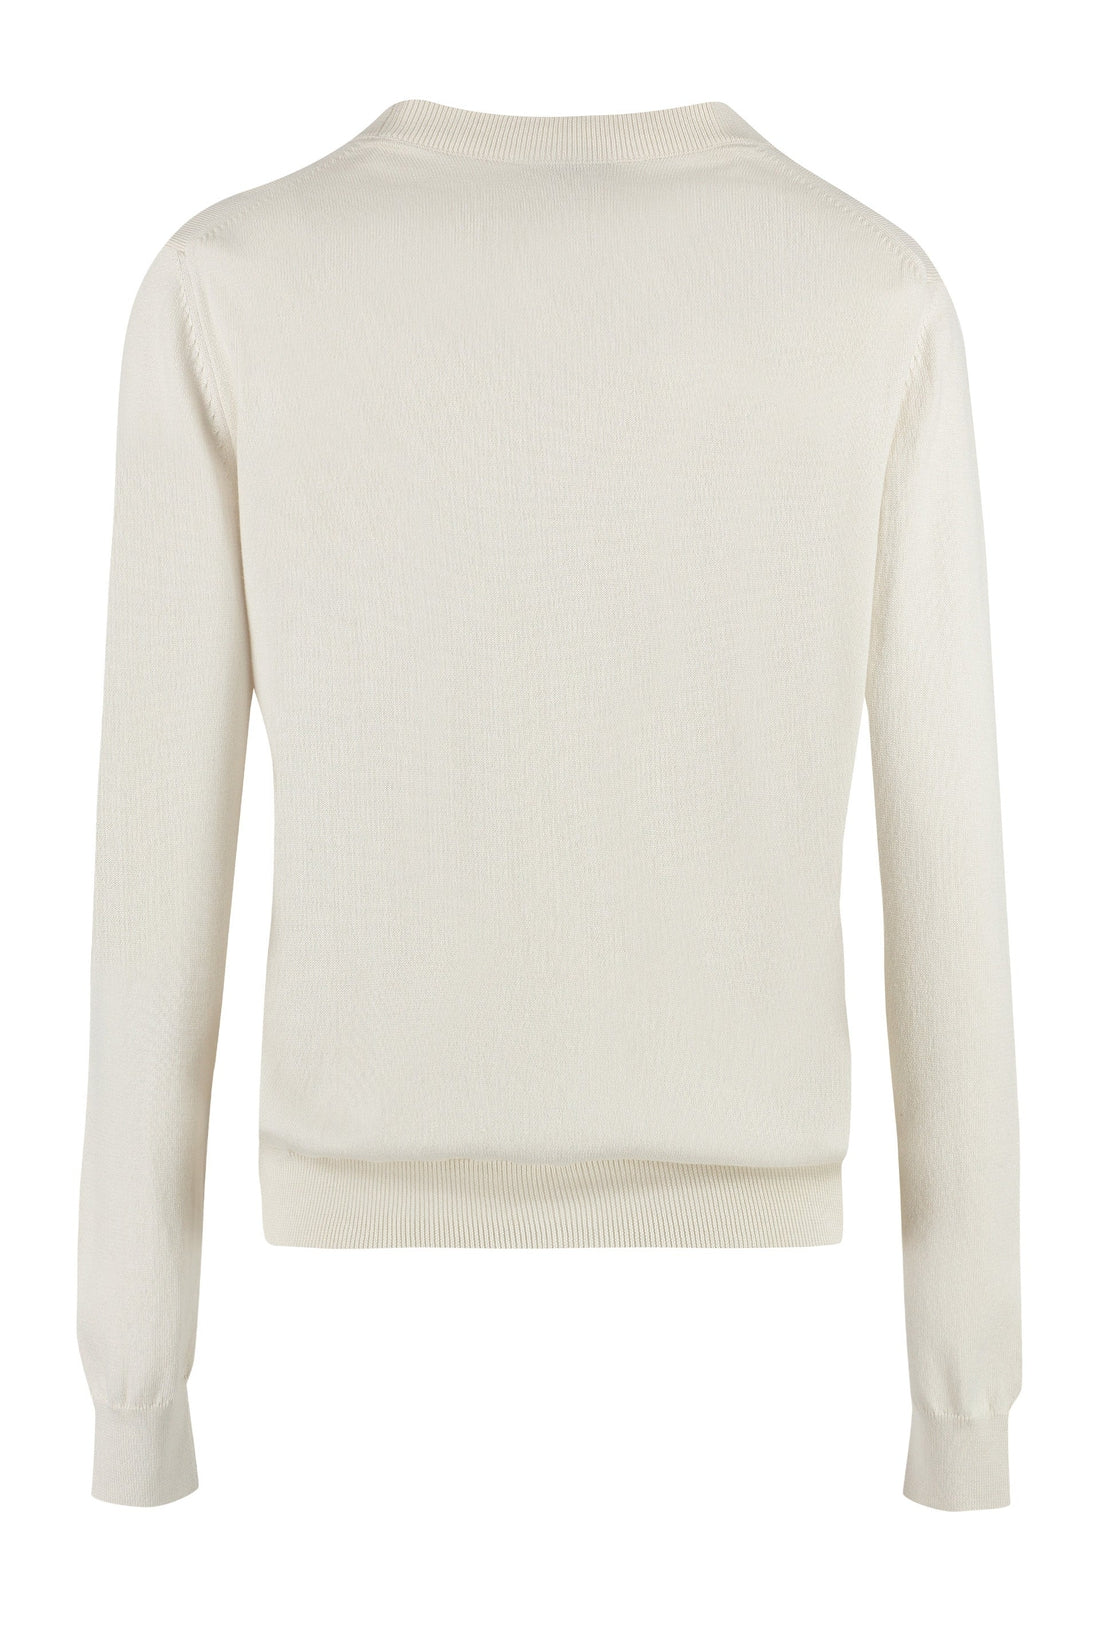 A.P.C.-OUTLET-SALE-Sylvaine cotton crew-neck sweater-ARCHIVIST